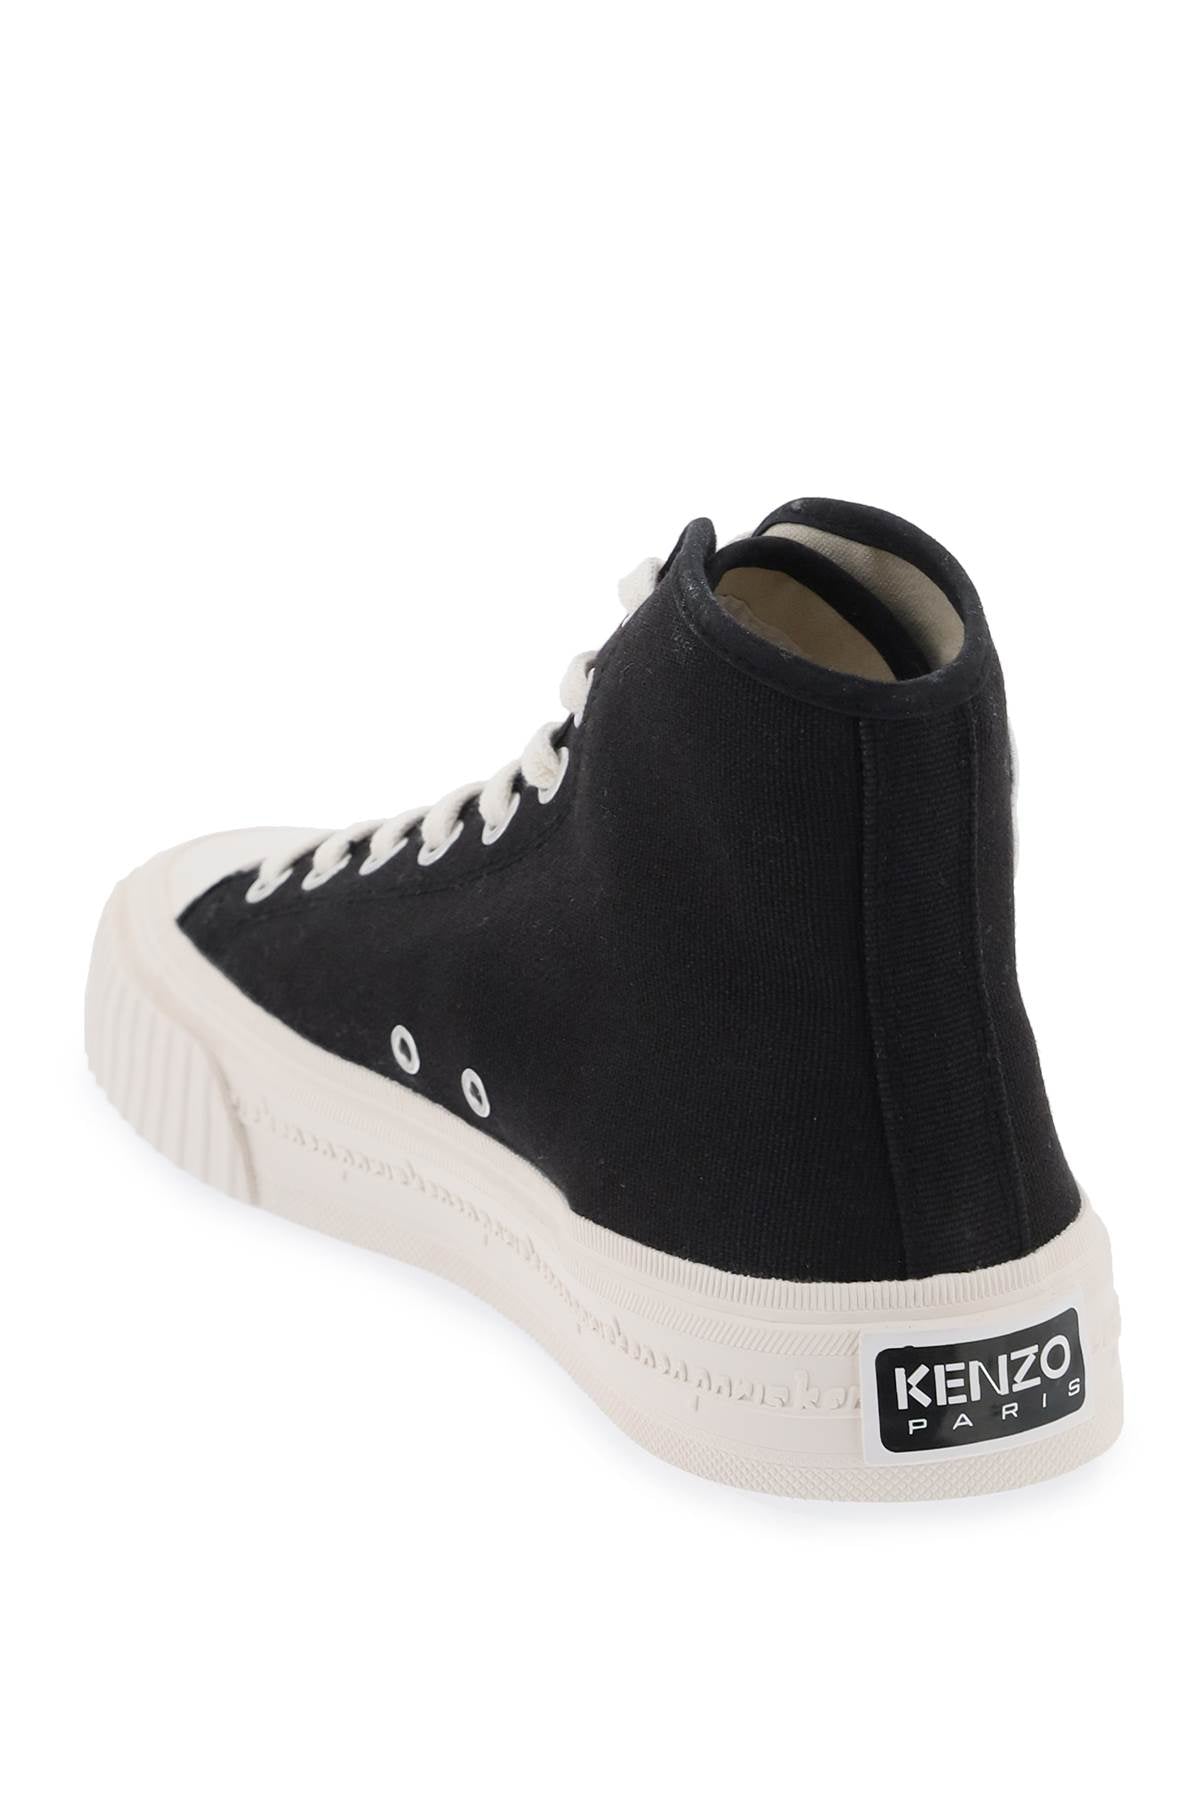 Kenzo Kenzo canvas kenzo foxy high-top sneakers